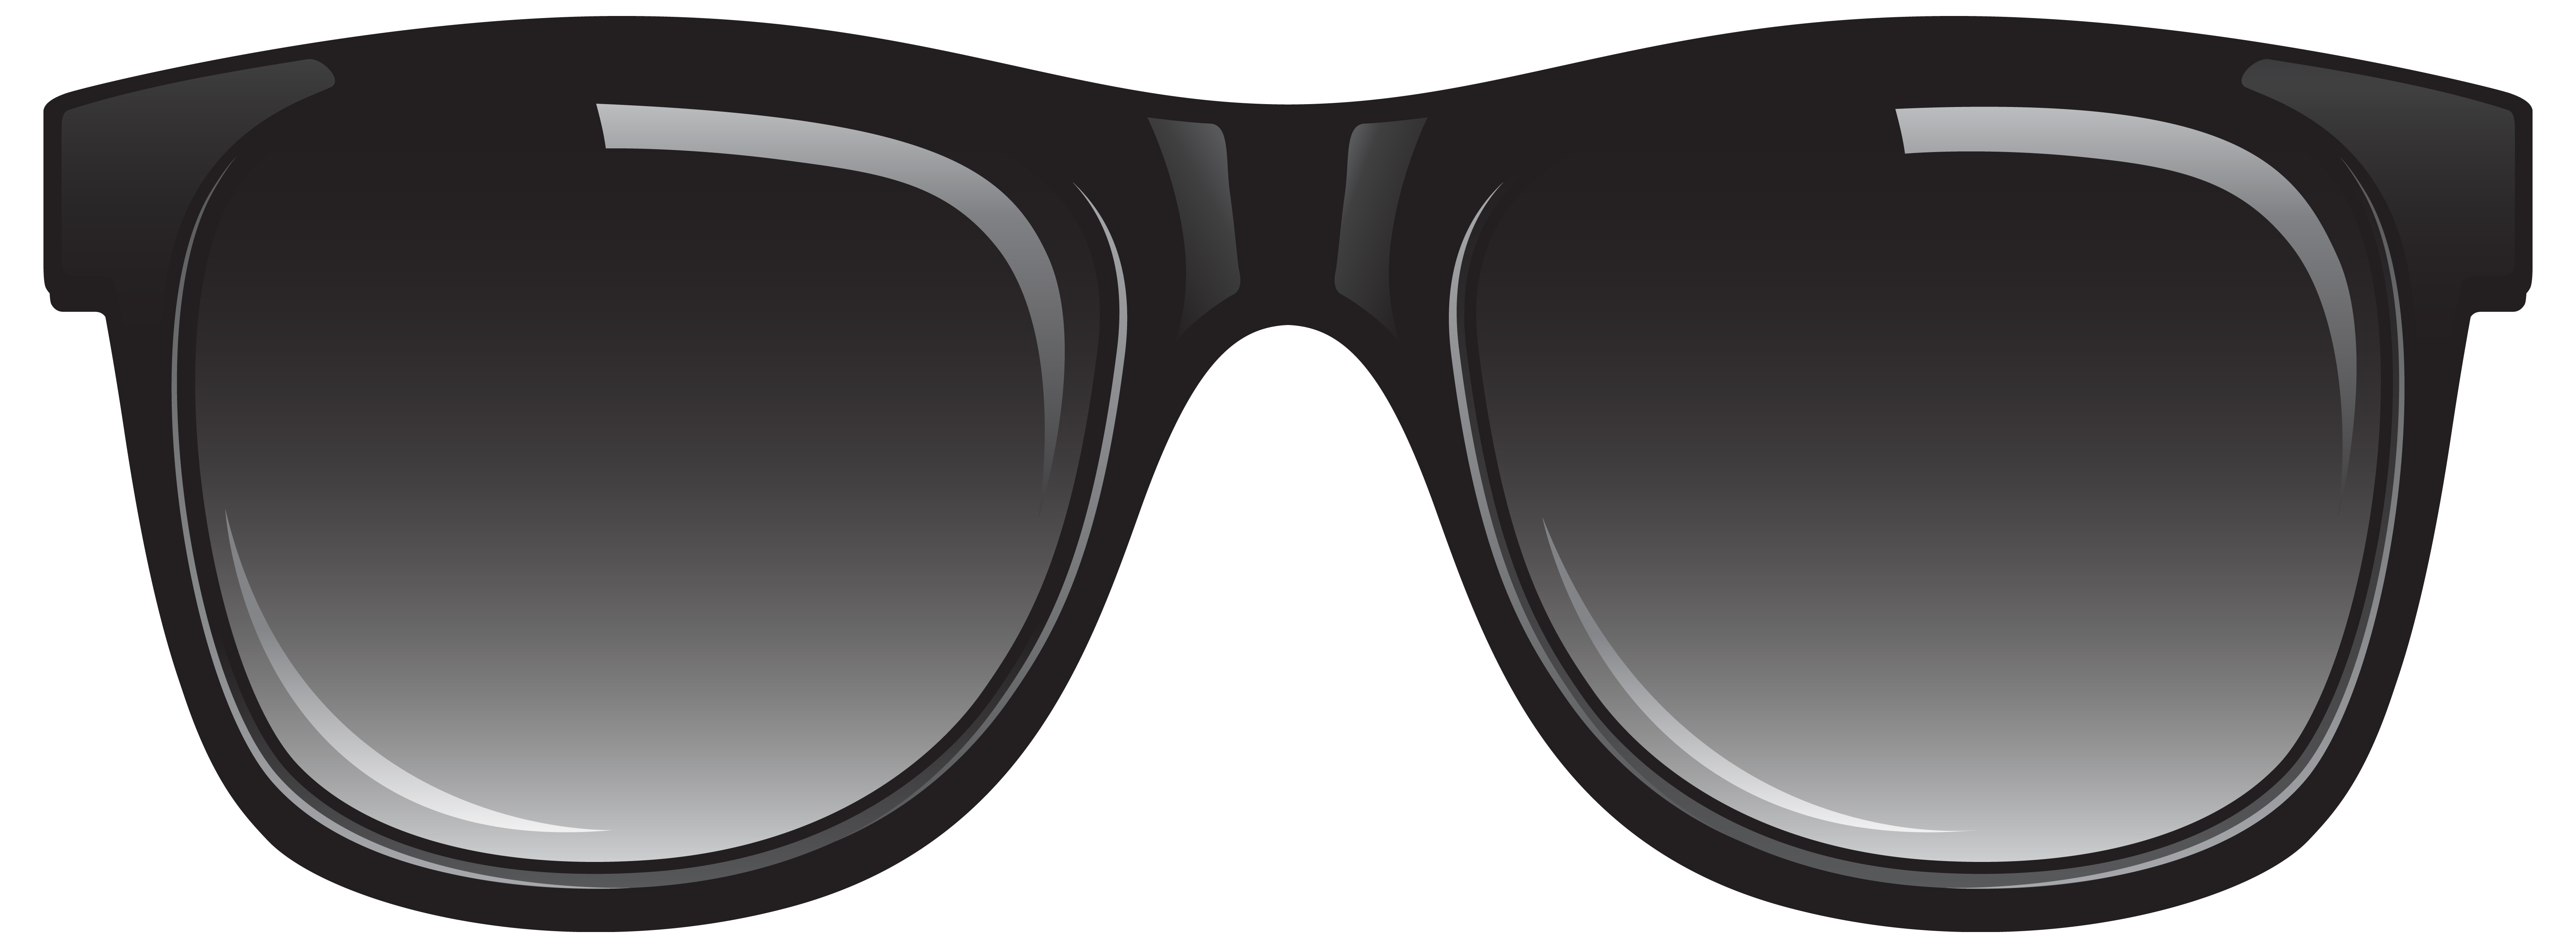 Sunglasses clipart free clip  - Sun Glasses Clip Art